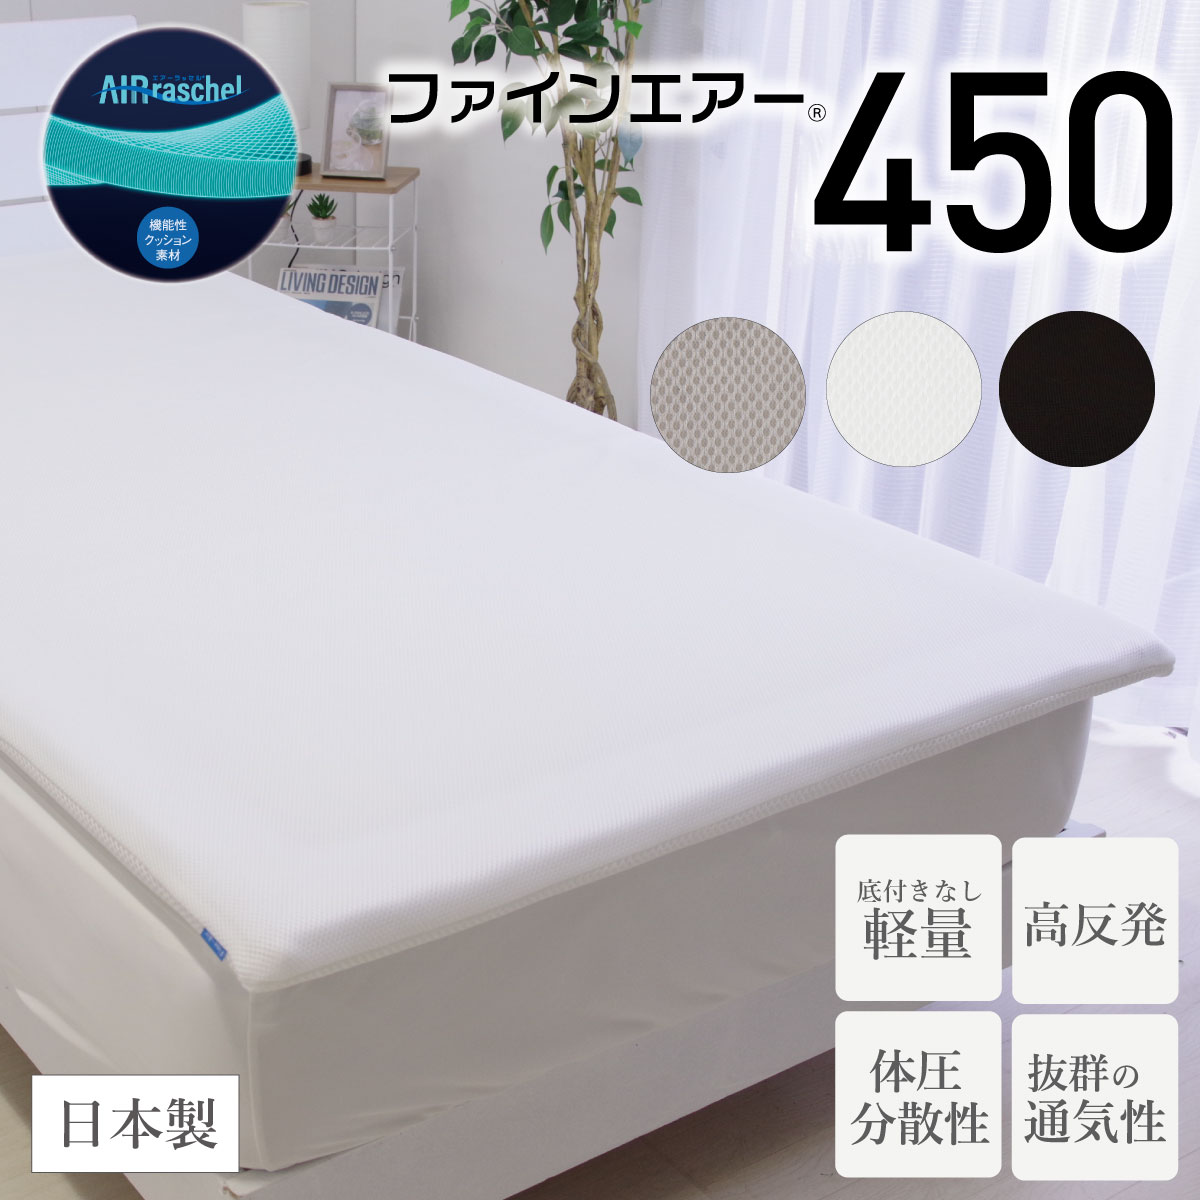 ファインエアー450 シングル セミダブル ダブル さまざまな利用シーンで活躍 軽量 優れた体圧分散性 高反発 マットレス 日本製 オーシン 洗える 快眠 新生活 ギフト 通気性 ml-9007